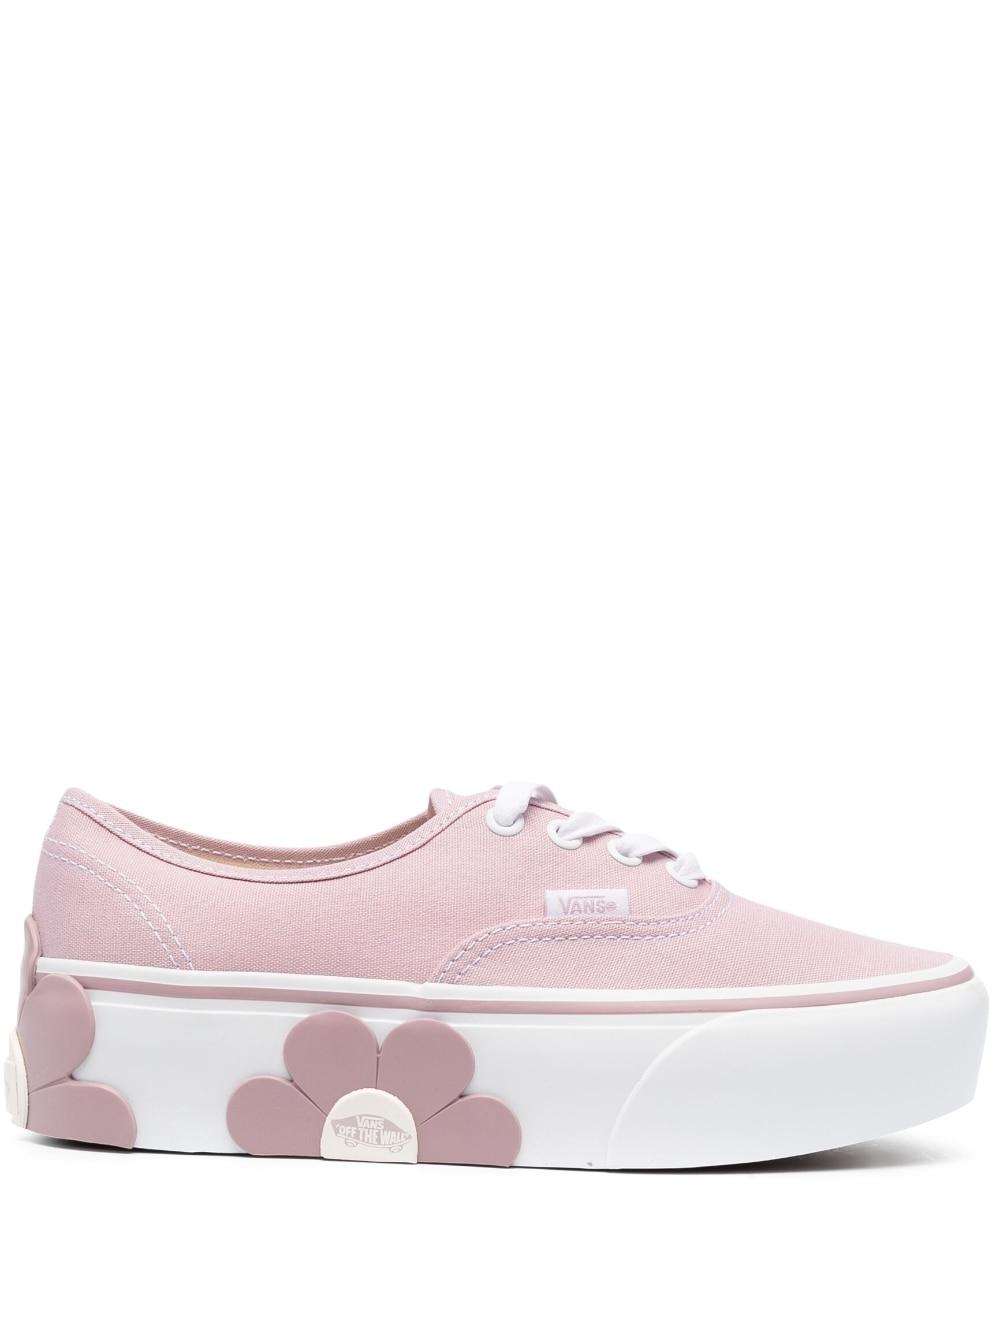 Vans Flower Appliqu Platform Sneakers In Pink Lyst Uk